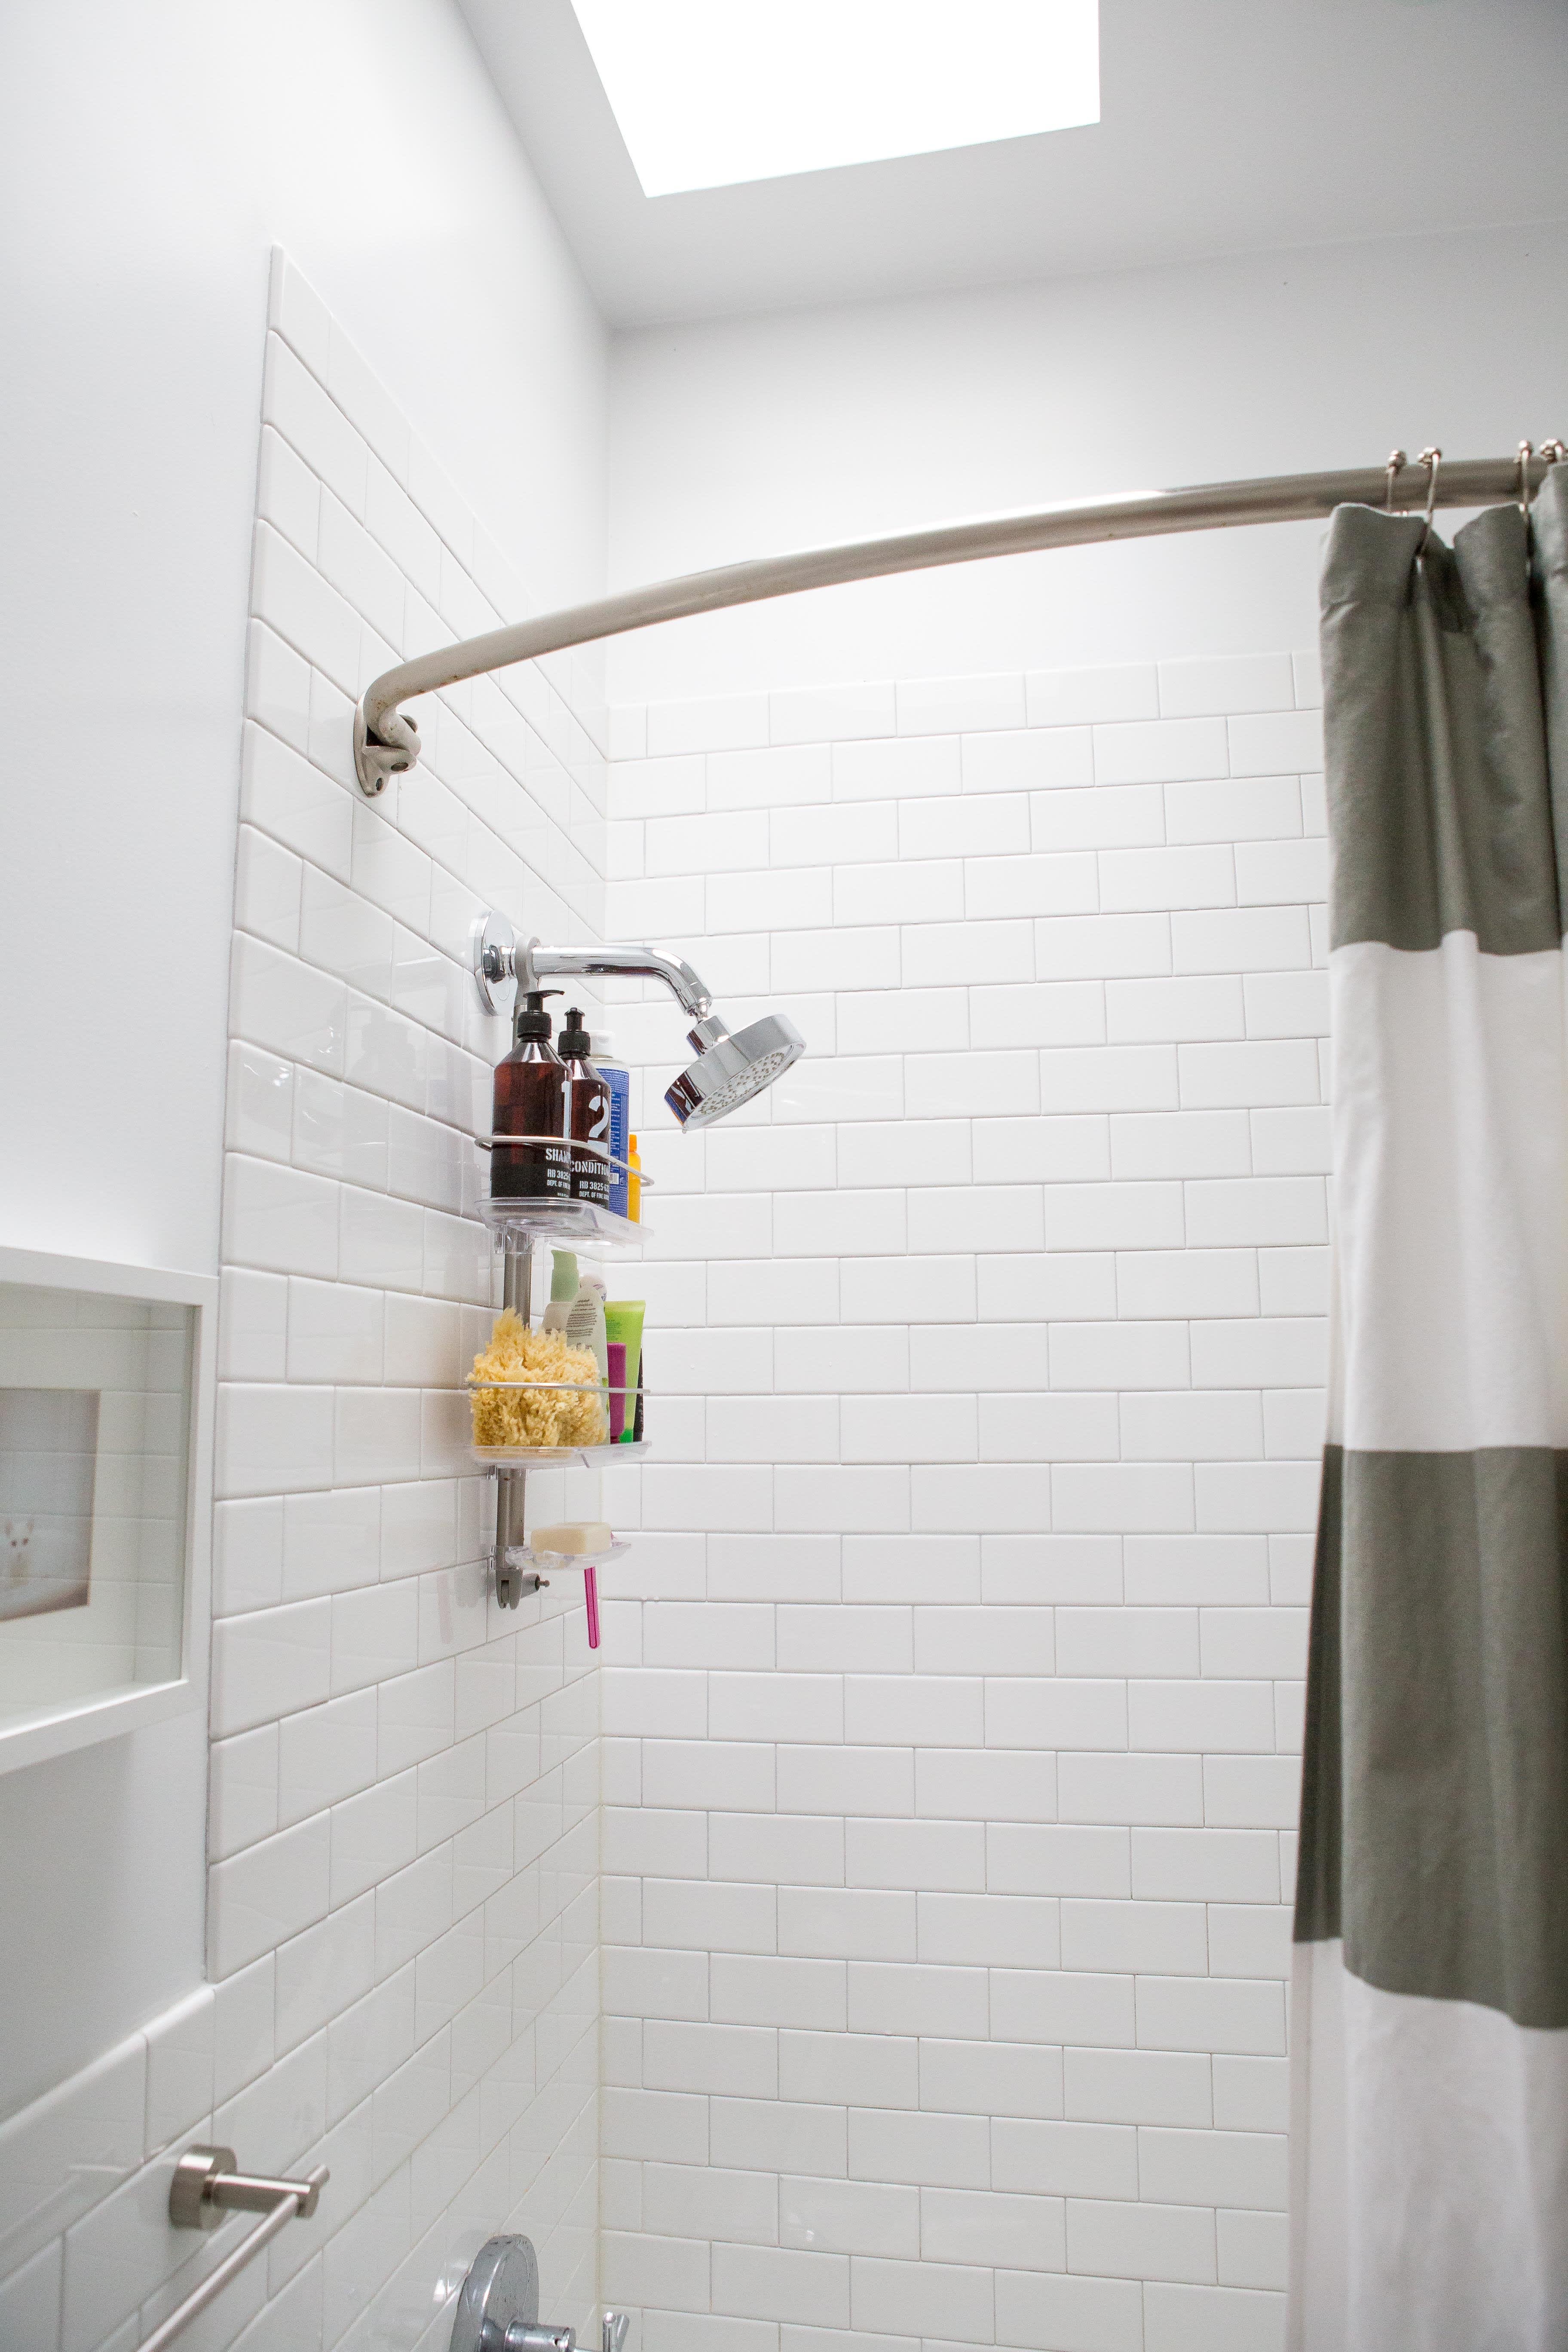 6 Tips To Keep Your Bathroom Mold-Free - Umbel Organics